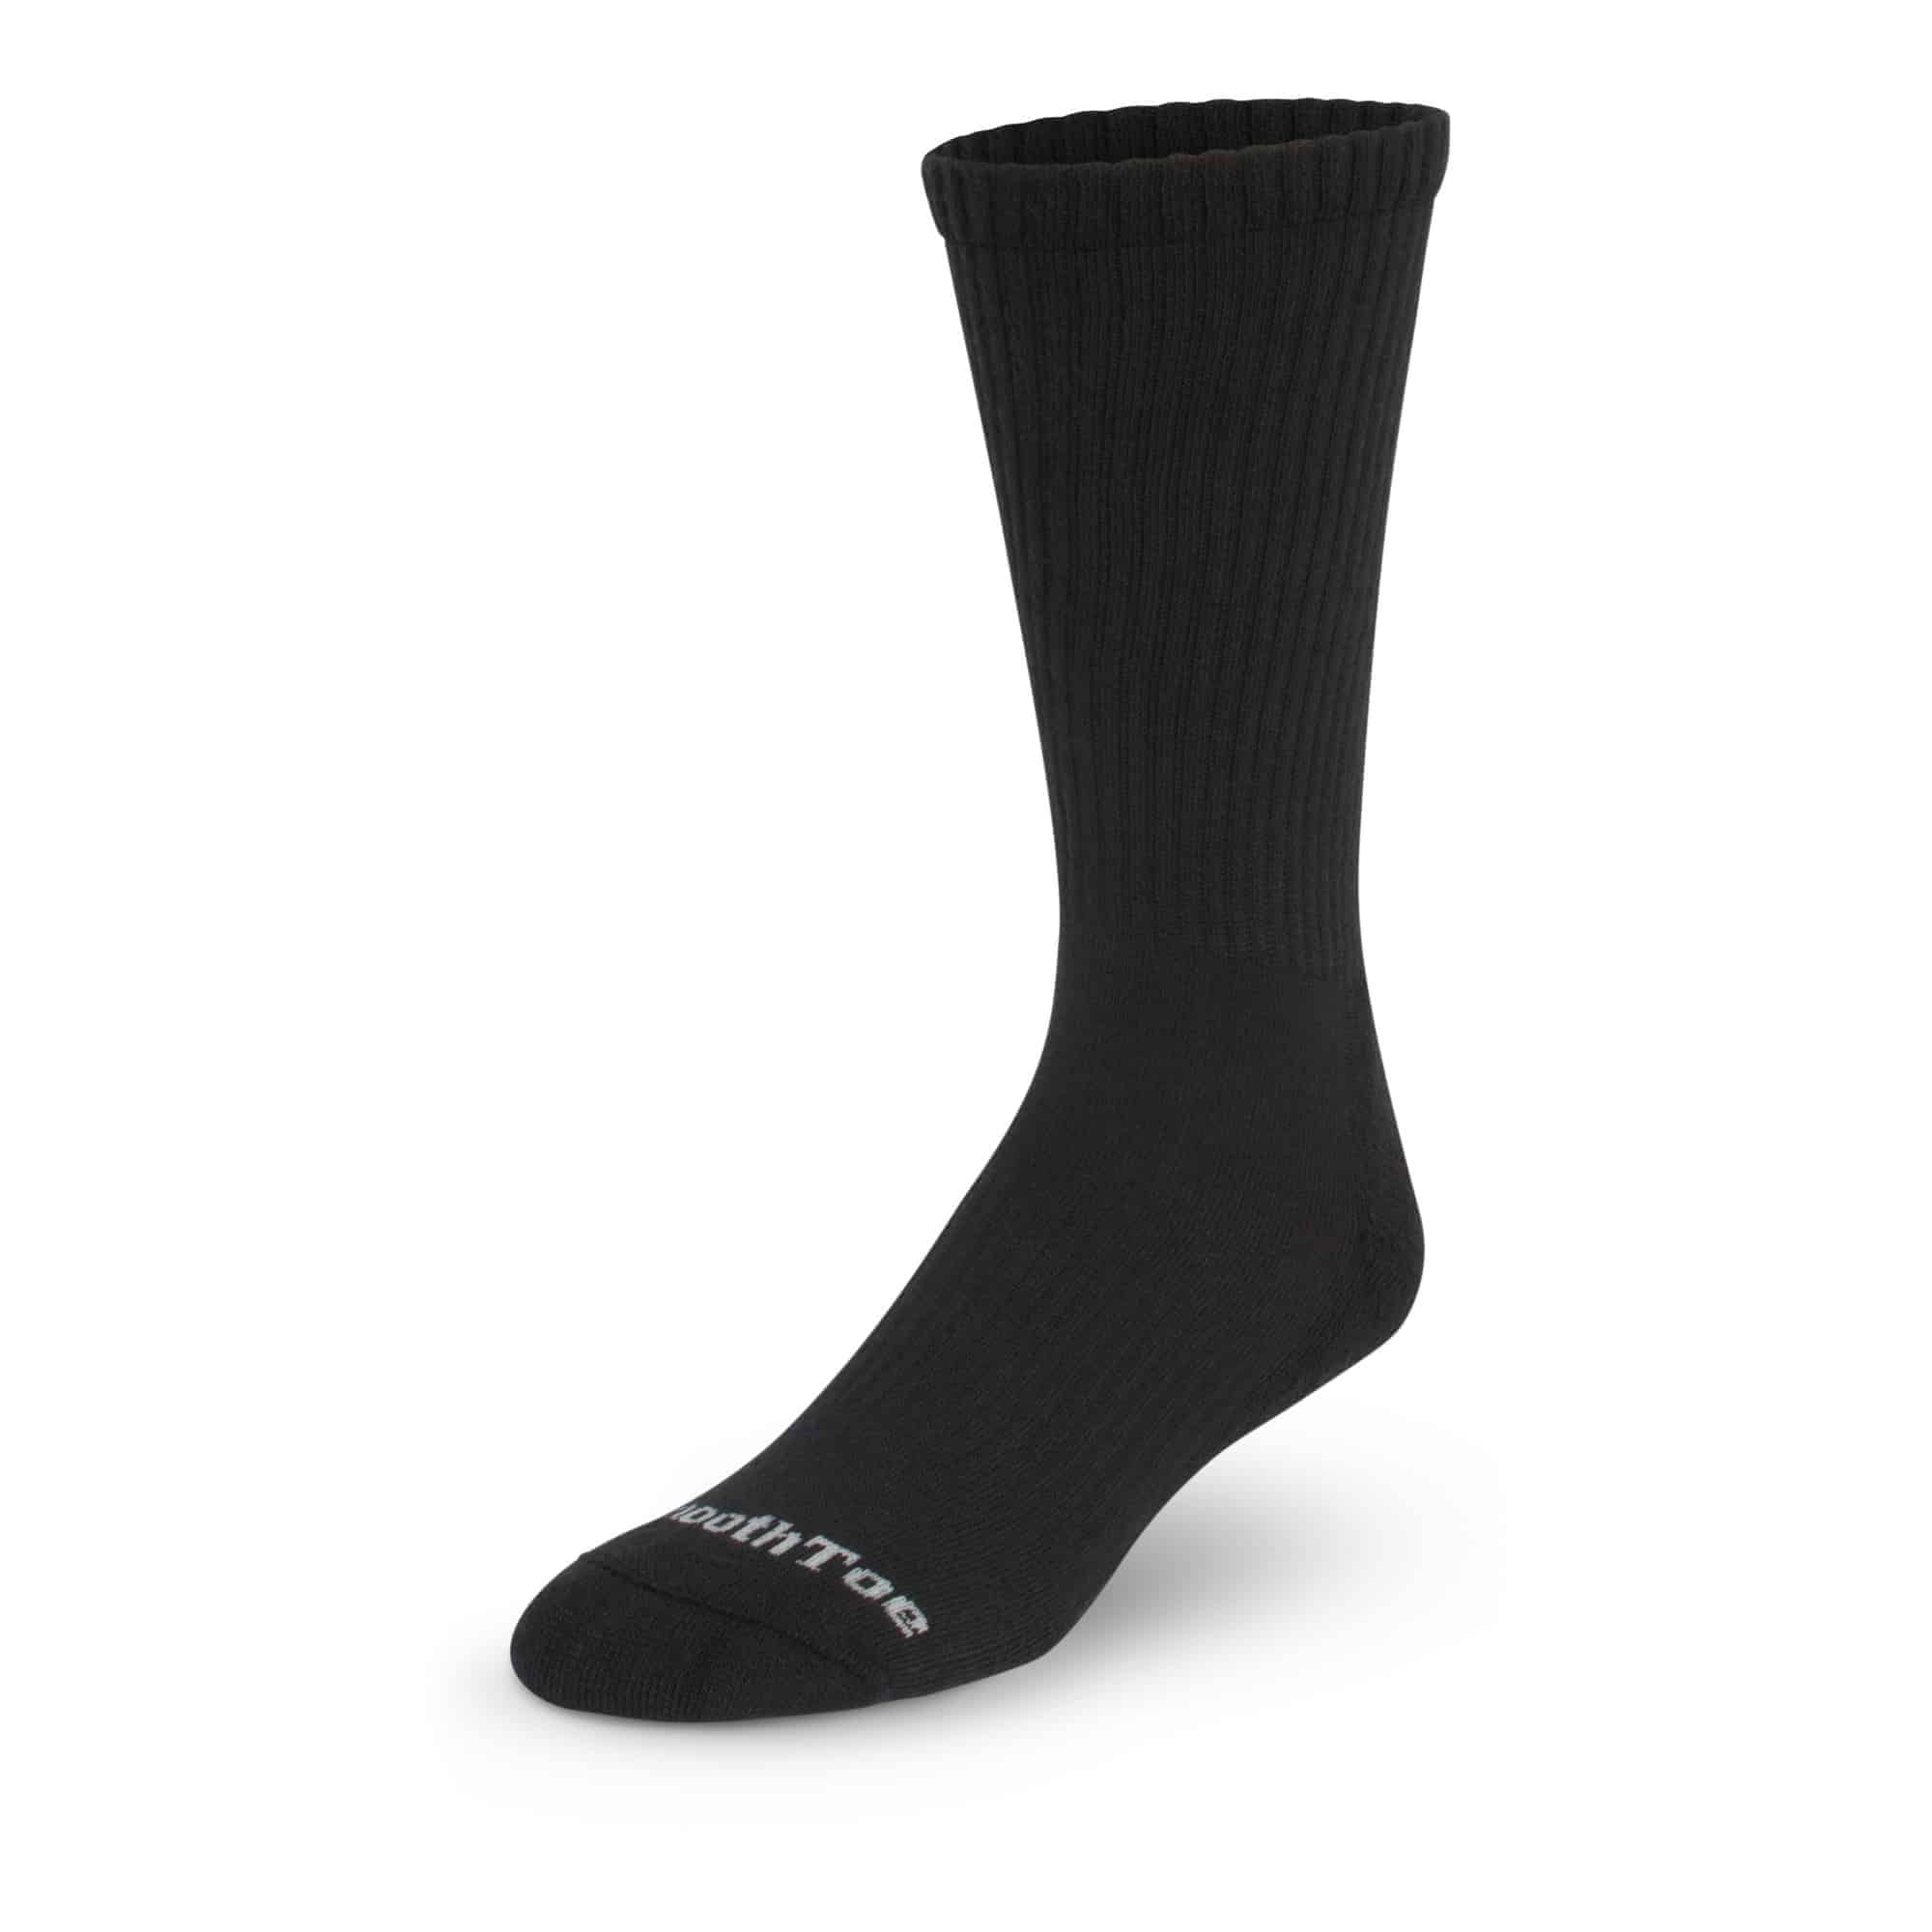 Mid Calf Compression Socks - 15-20 mmHg